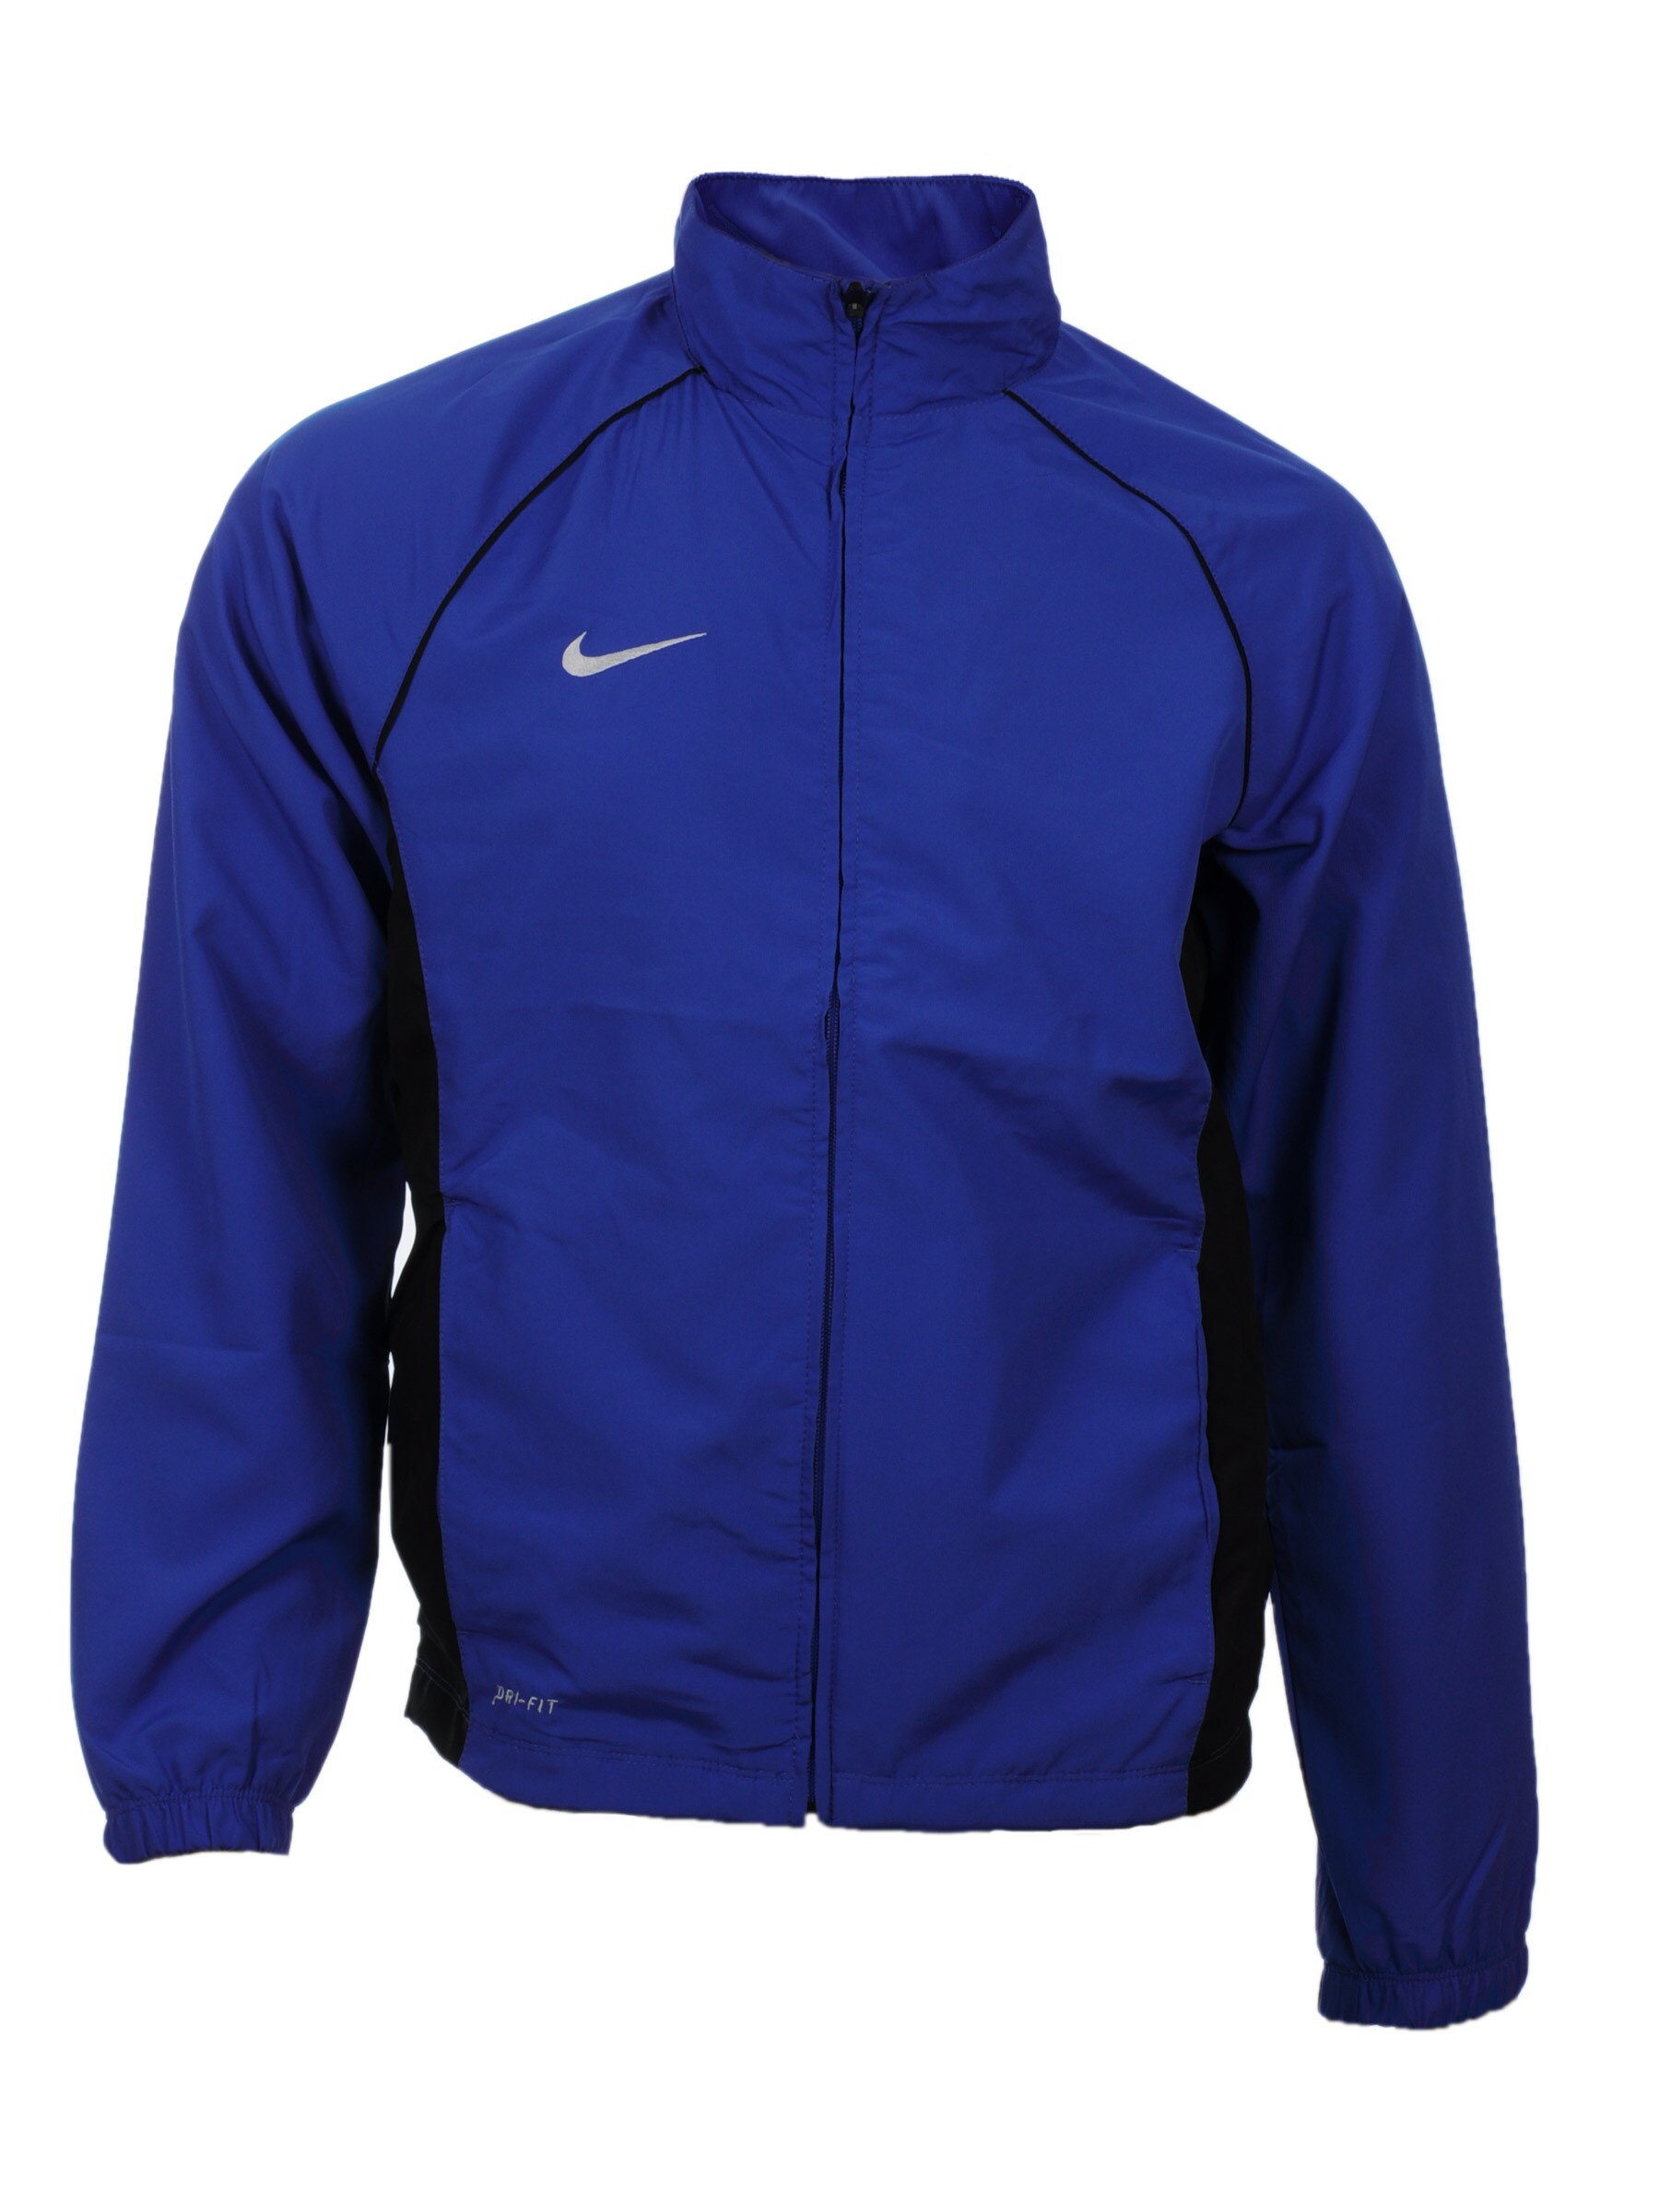 Nike Men As Sideline J Blue Jackets